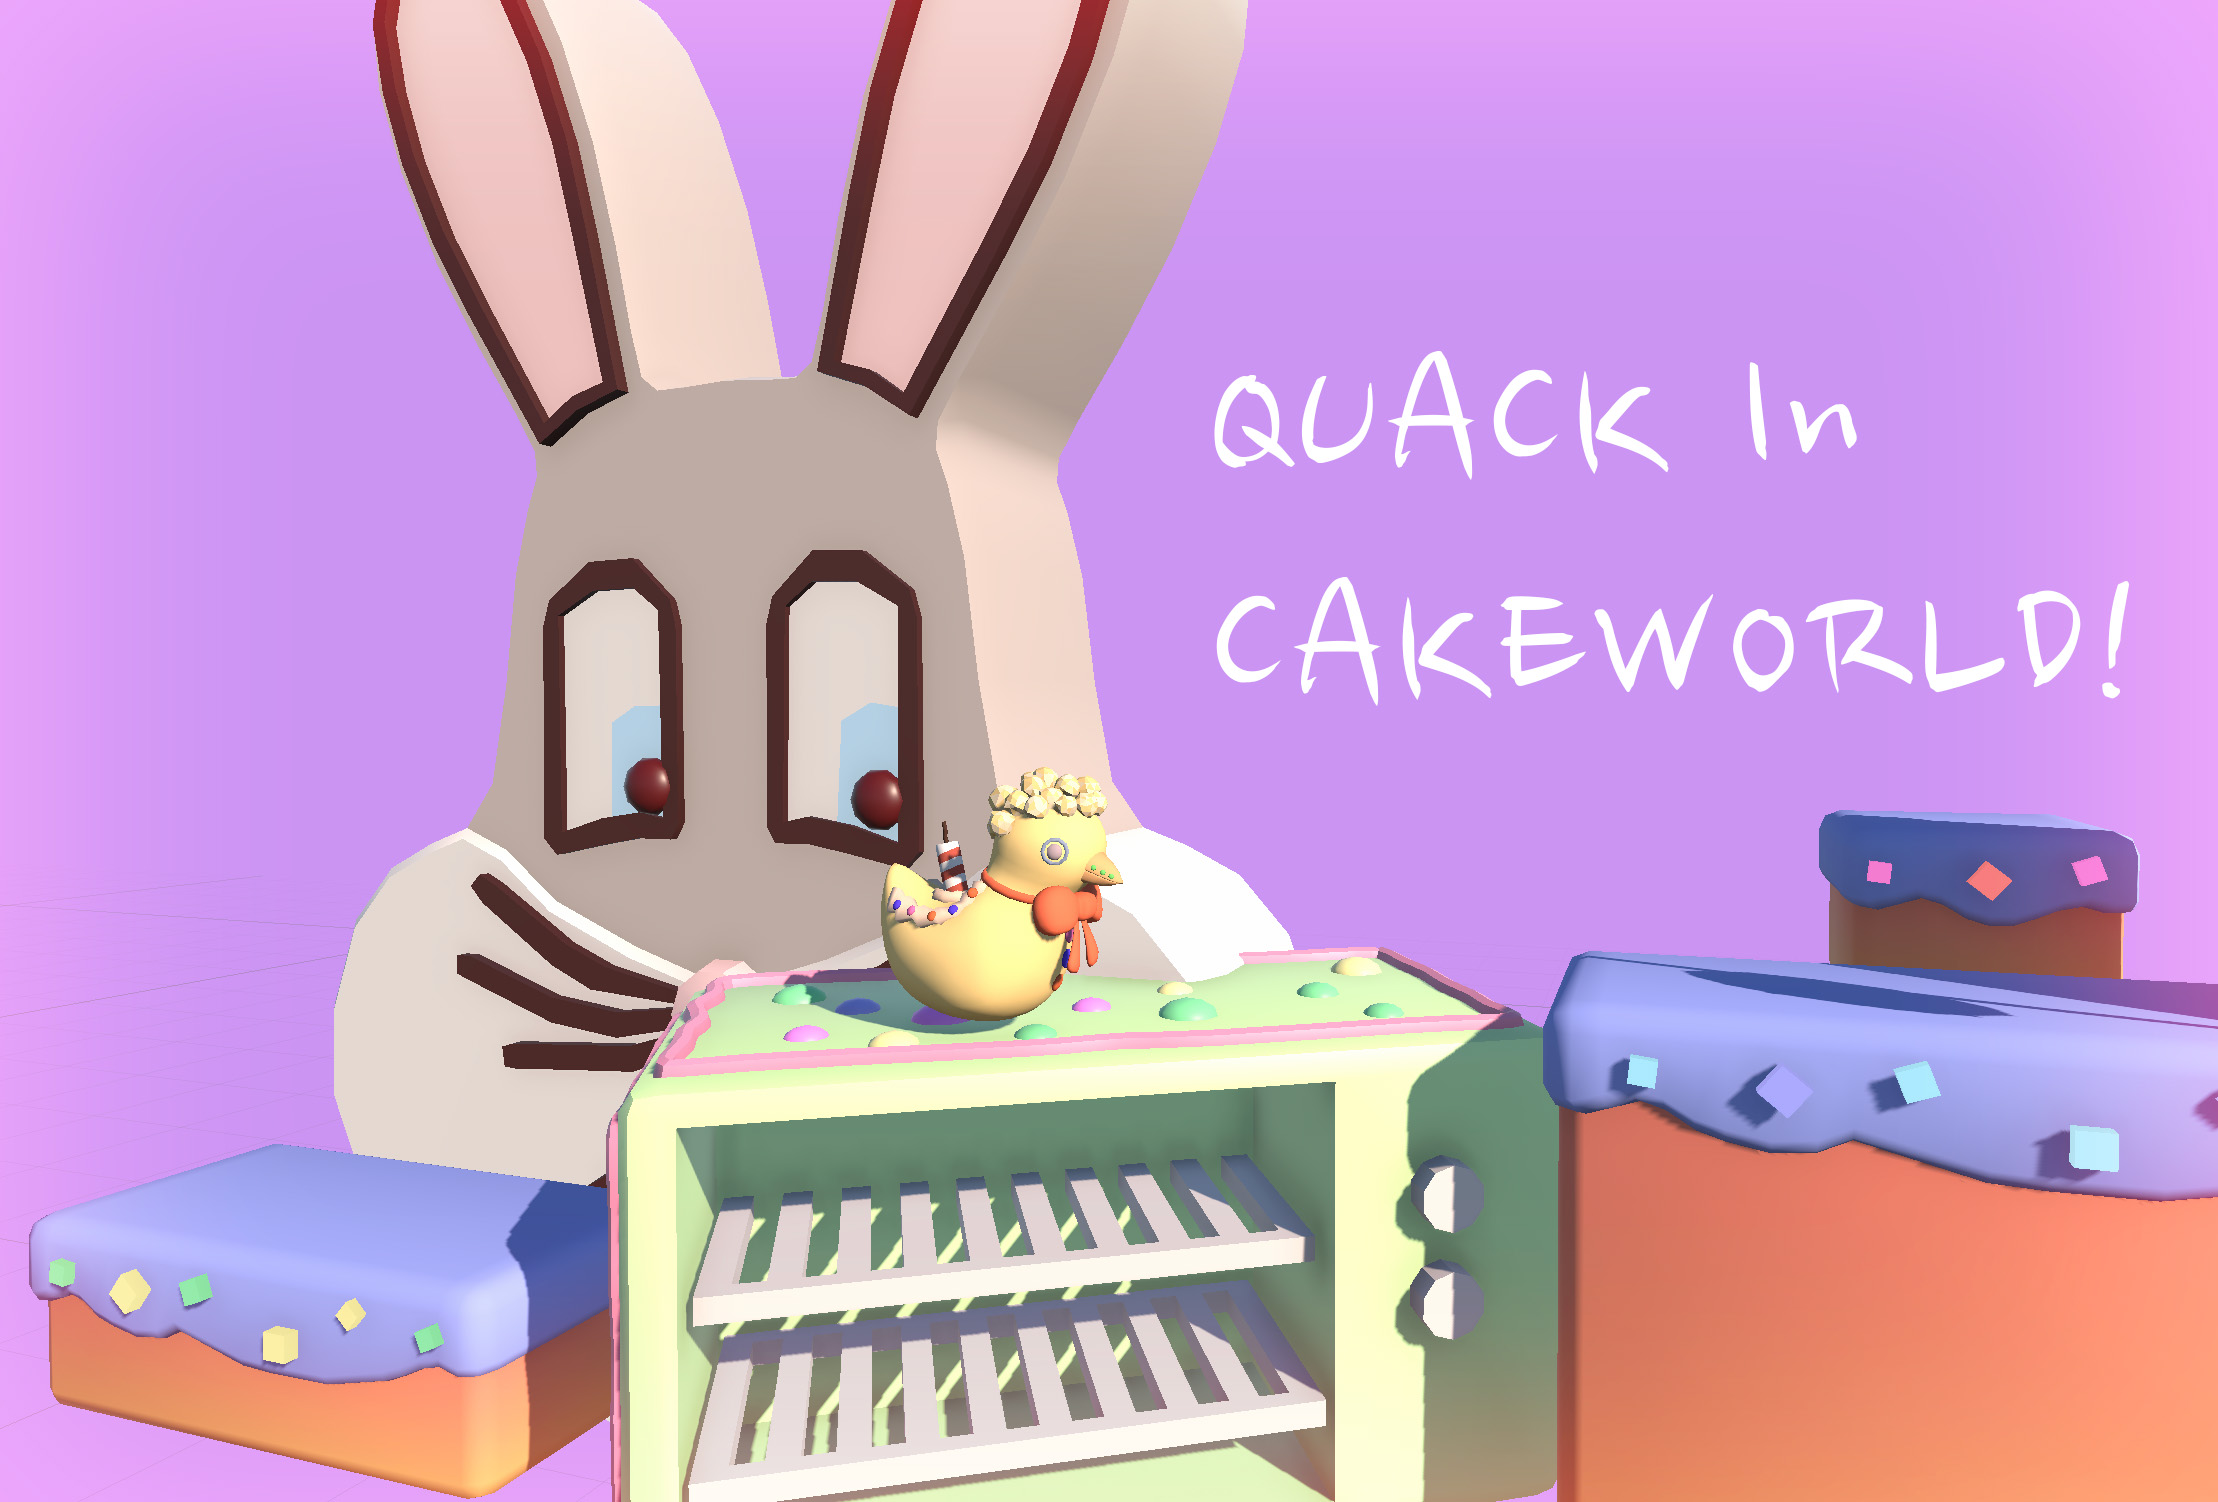 Quack in Cakeworld!